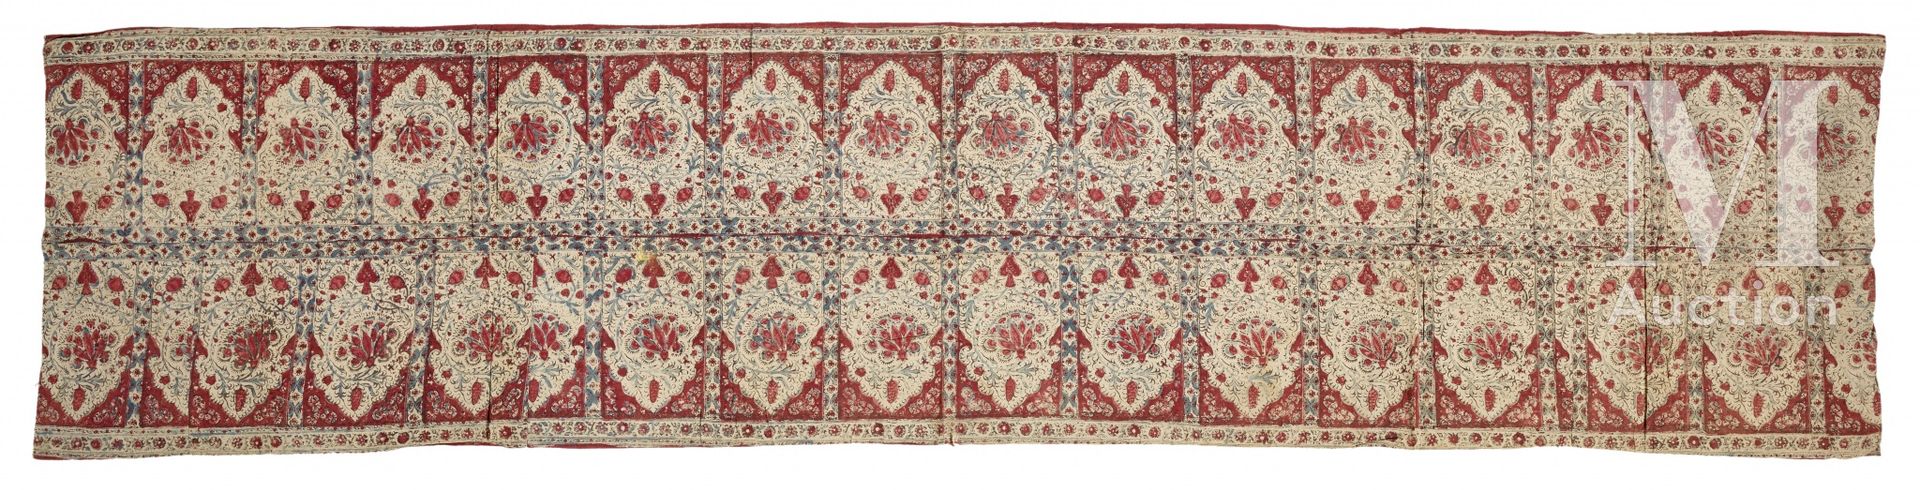 Null Kalamkar-Bordüre Indien, um 1900 Handbedruckter Baumwollbehang mit belebten&hellip;